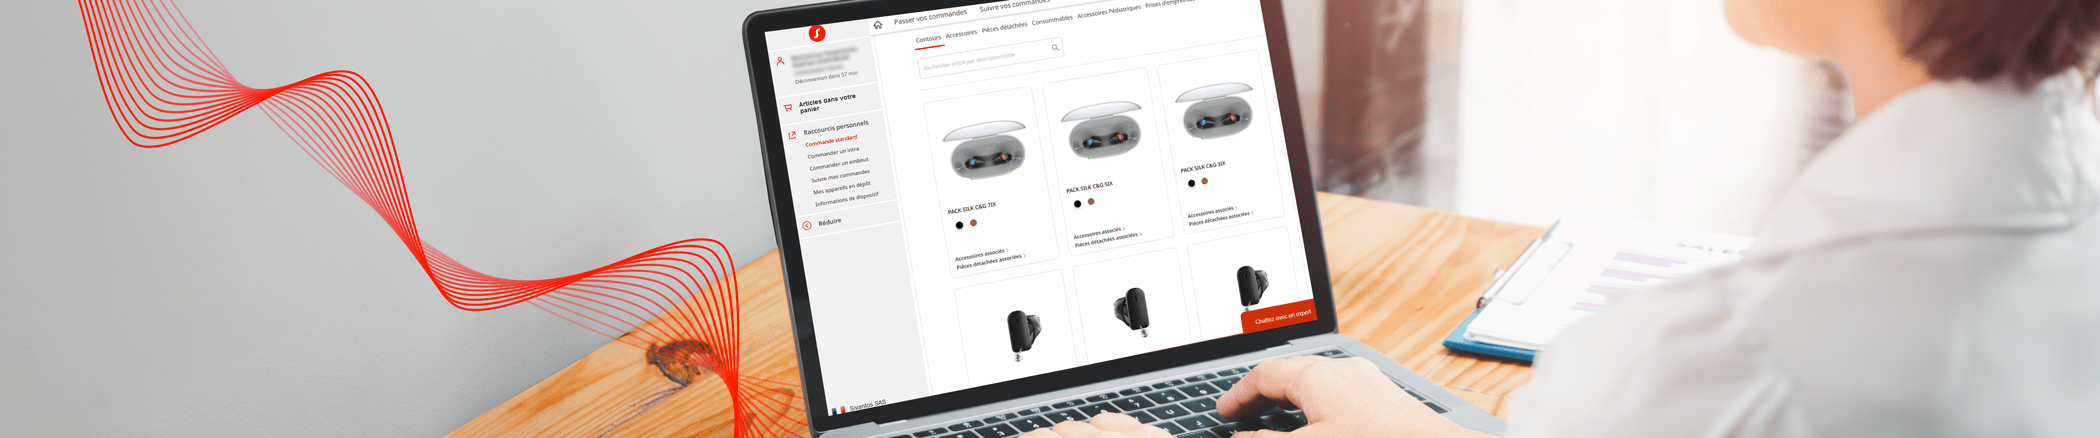 ebusiness 2.0 - l'outil de commande en ligne d'aides auditives Signia qui facilite la vie des audioprothésistes